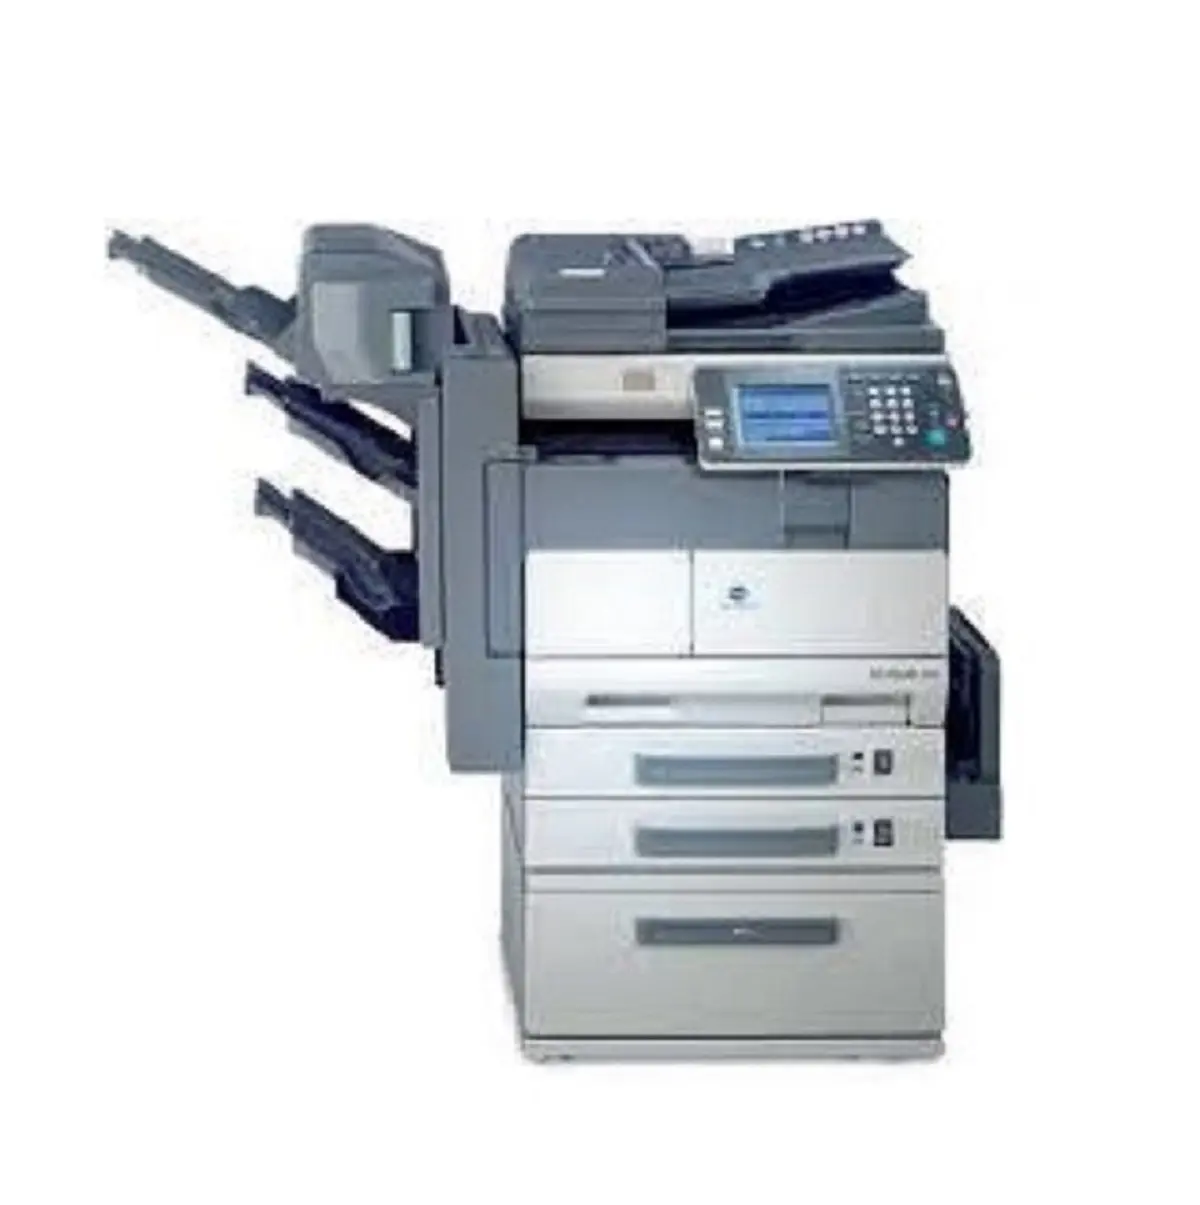 משמש לייזר מדפסות יד שנייה בשימוש מדפסת מכונת צילום של Konica Minolta